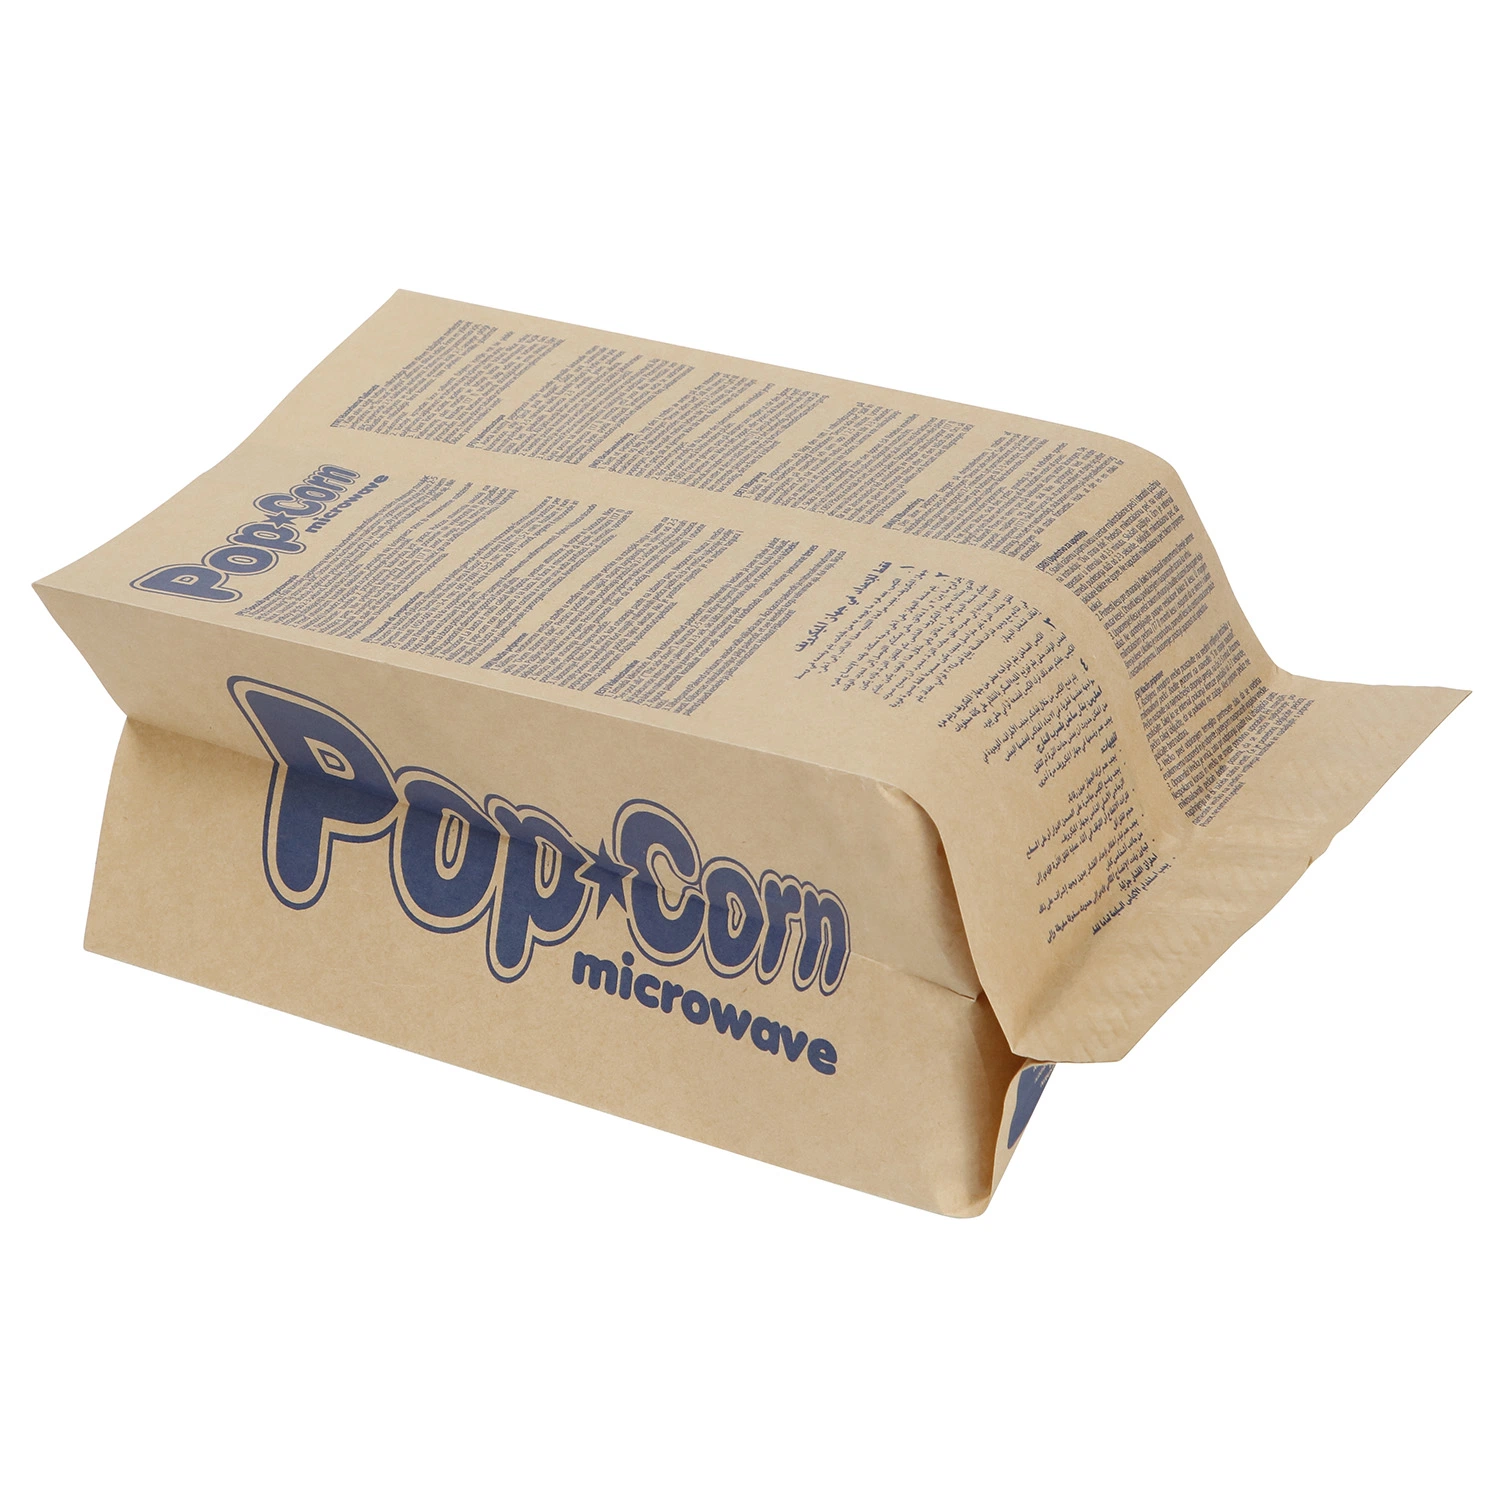 Venda por grosso de Design Personalizado Grau Alimentício com película reflectora pipoca de microondas embalagem de sacos de papel para alimentos